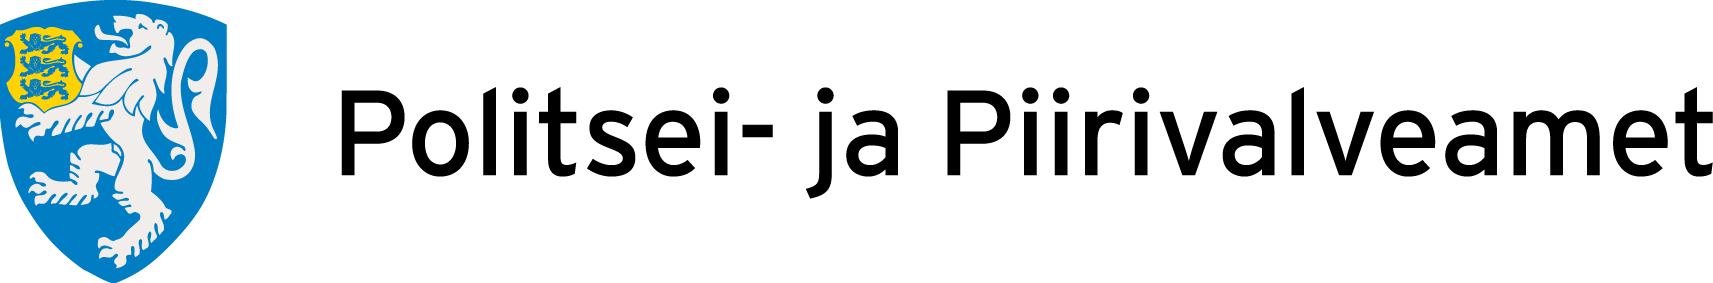 PPA logo - Tammiste Personalibüroo | Värbamine - Koolitus - Coaching